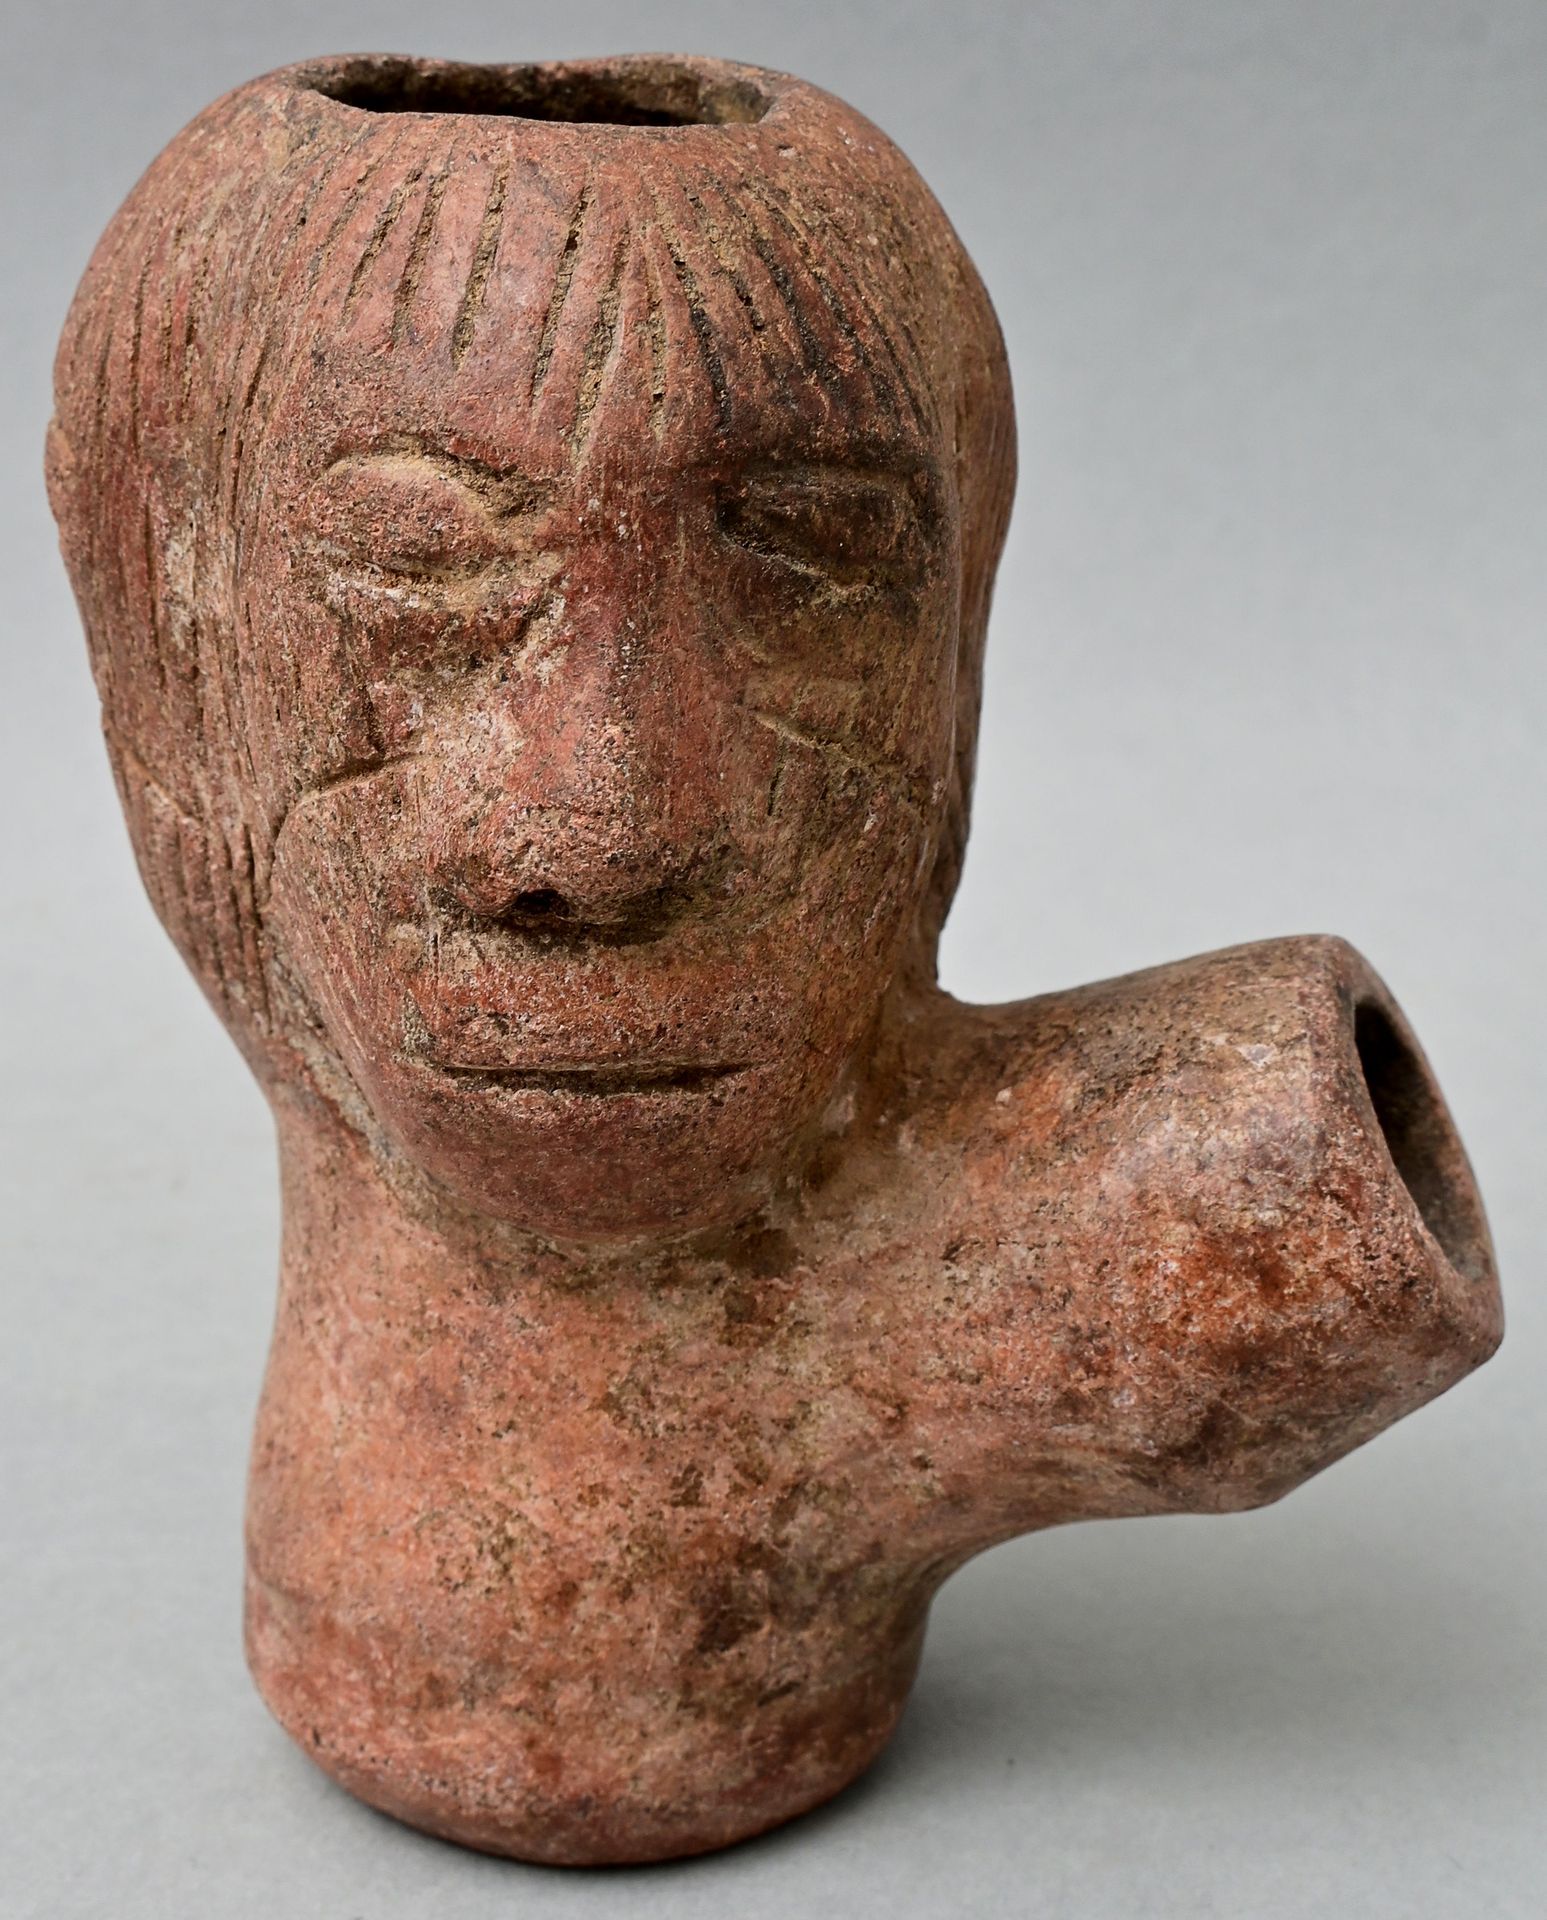 Null 管碗，尼日利亚 陶瓷材料/粘土，三个拟人化的头像，有刻画的雕刻造型。高11.5厘米 出处：符腾堡州私人财产 烟斗头，粘土，尼日利亚。高11,5厘米